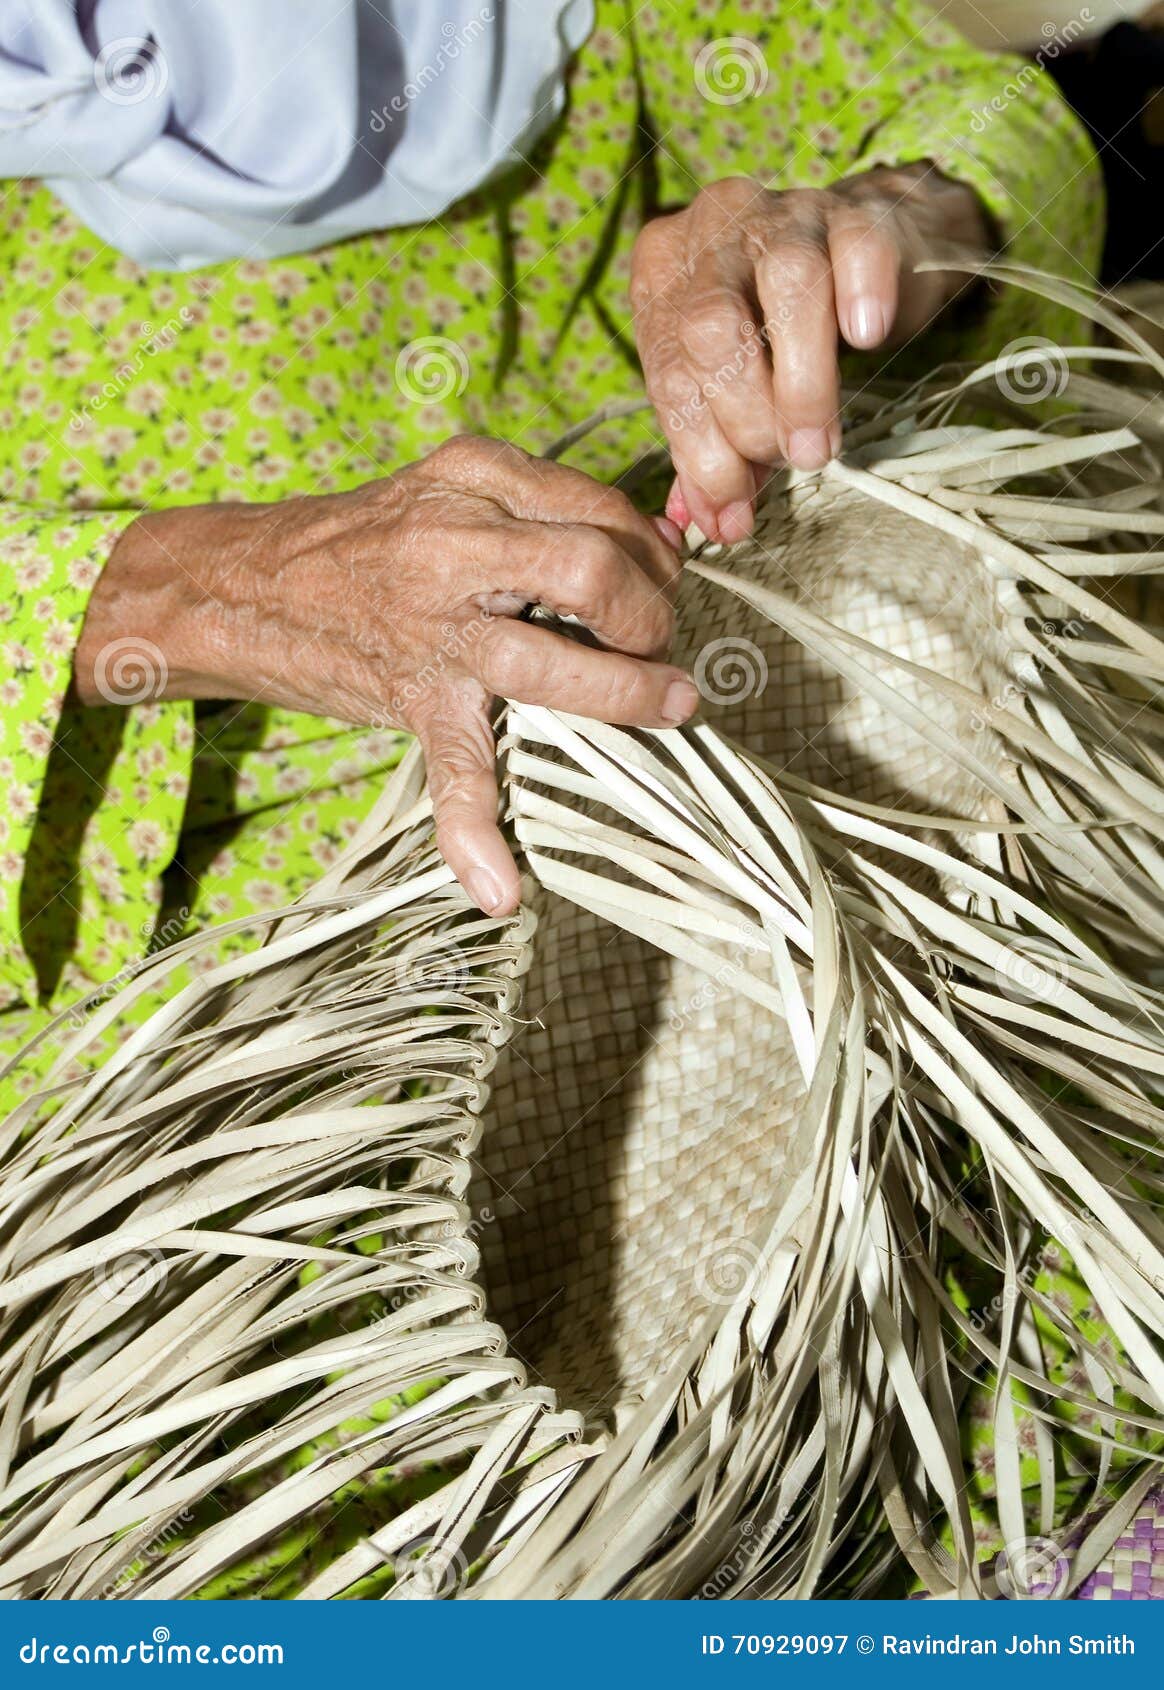 Basket Weaving stock image. Image of hand, basket, details - 70929097